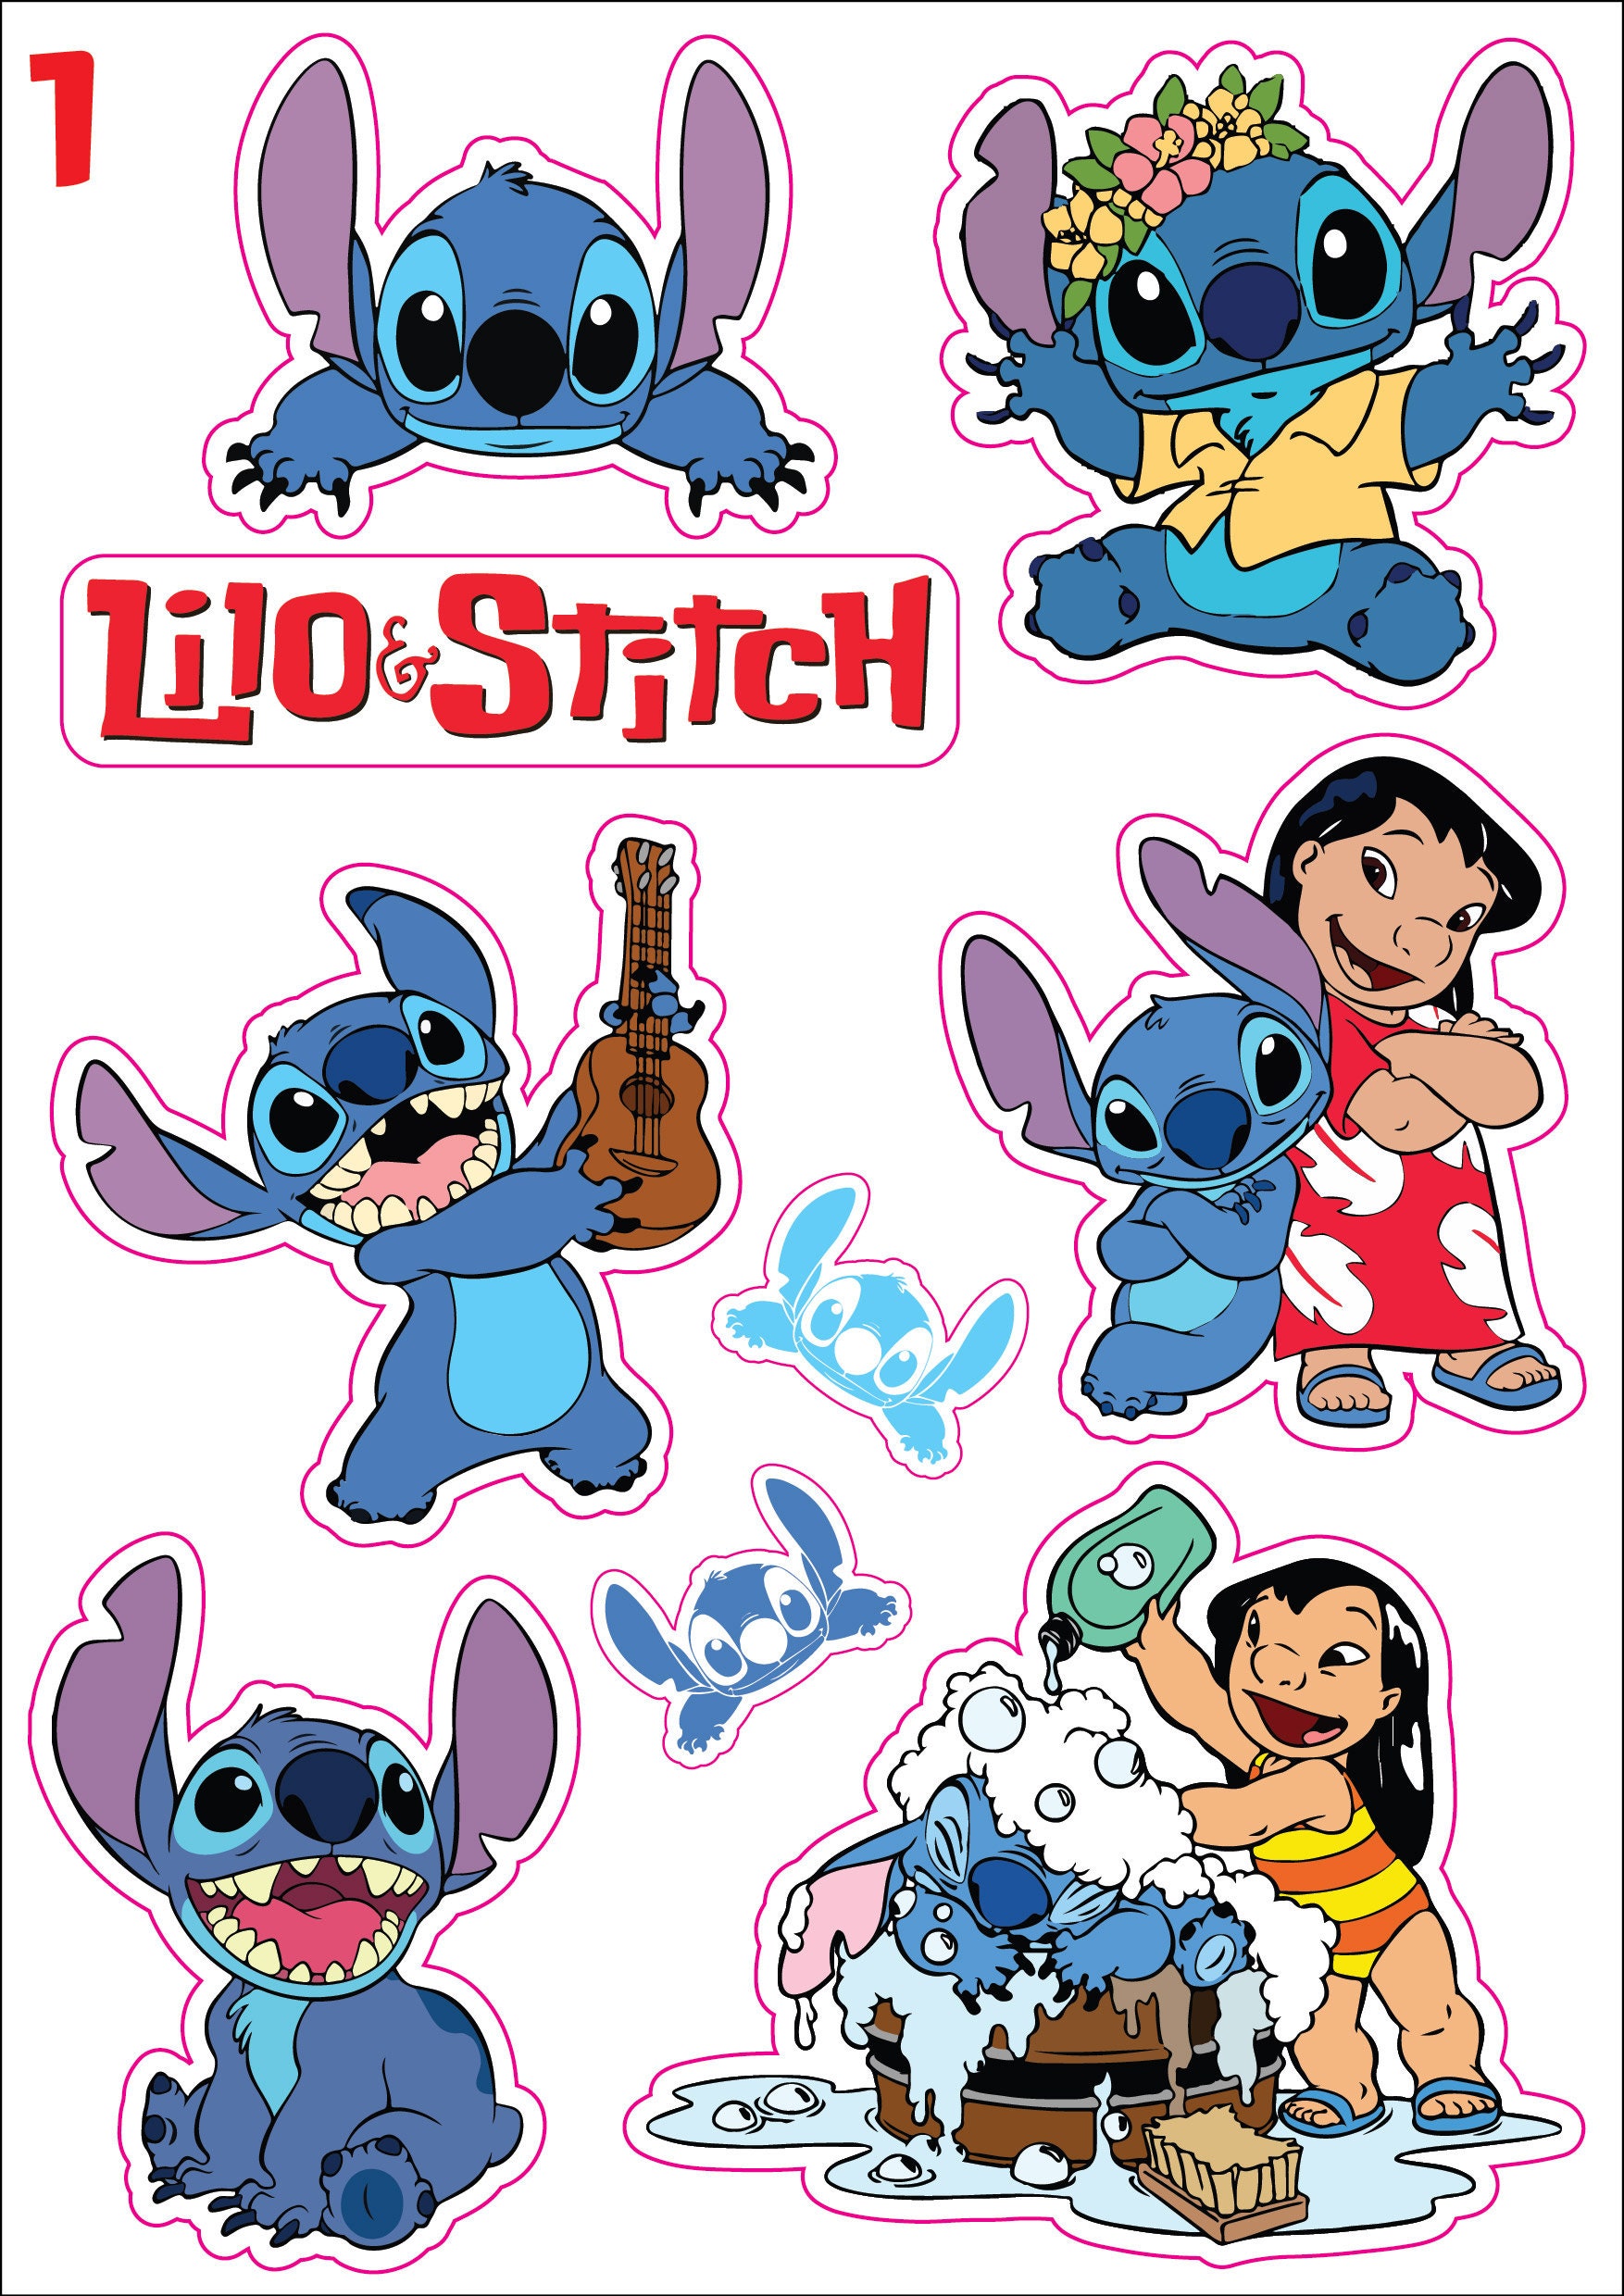 Autocollant décoratif Disney Lilo et Stitch